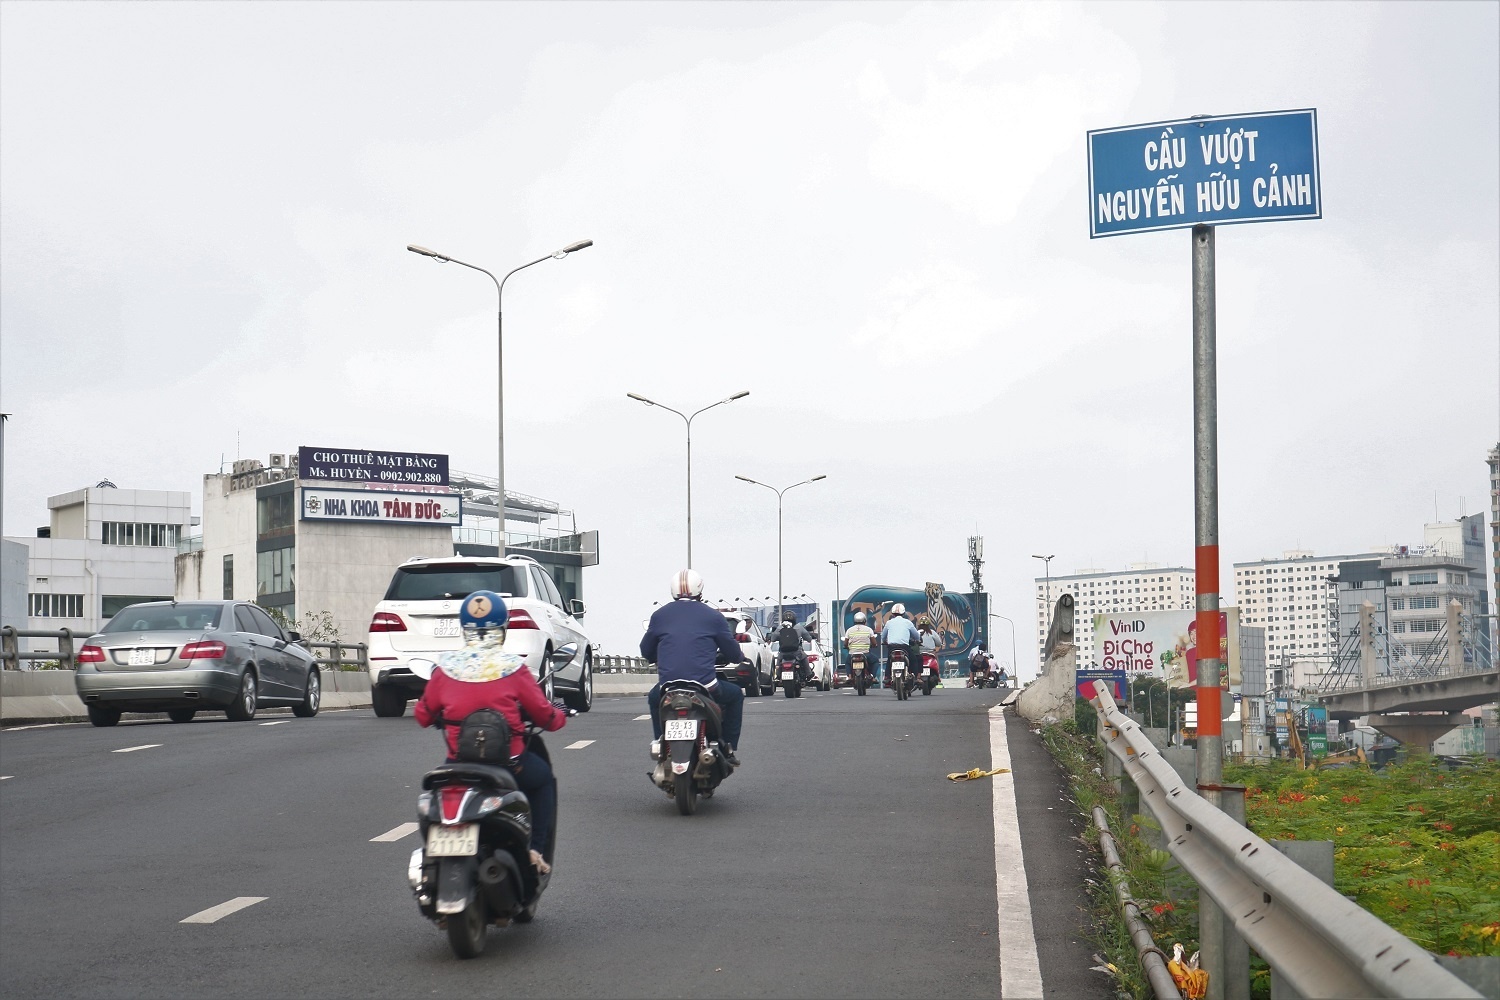 Sở GTVT TP.HCM đã cấm xe tải và ôtô trên 16 chỗ qua cầu vượt Nguyễn Hữu Cảnh để bảo đảm an toàn cho các phương tiện trong thời gian chờ khắc phục sự cố  CẢNH AN